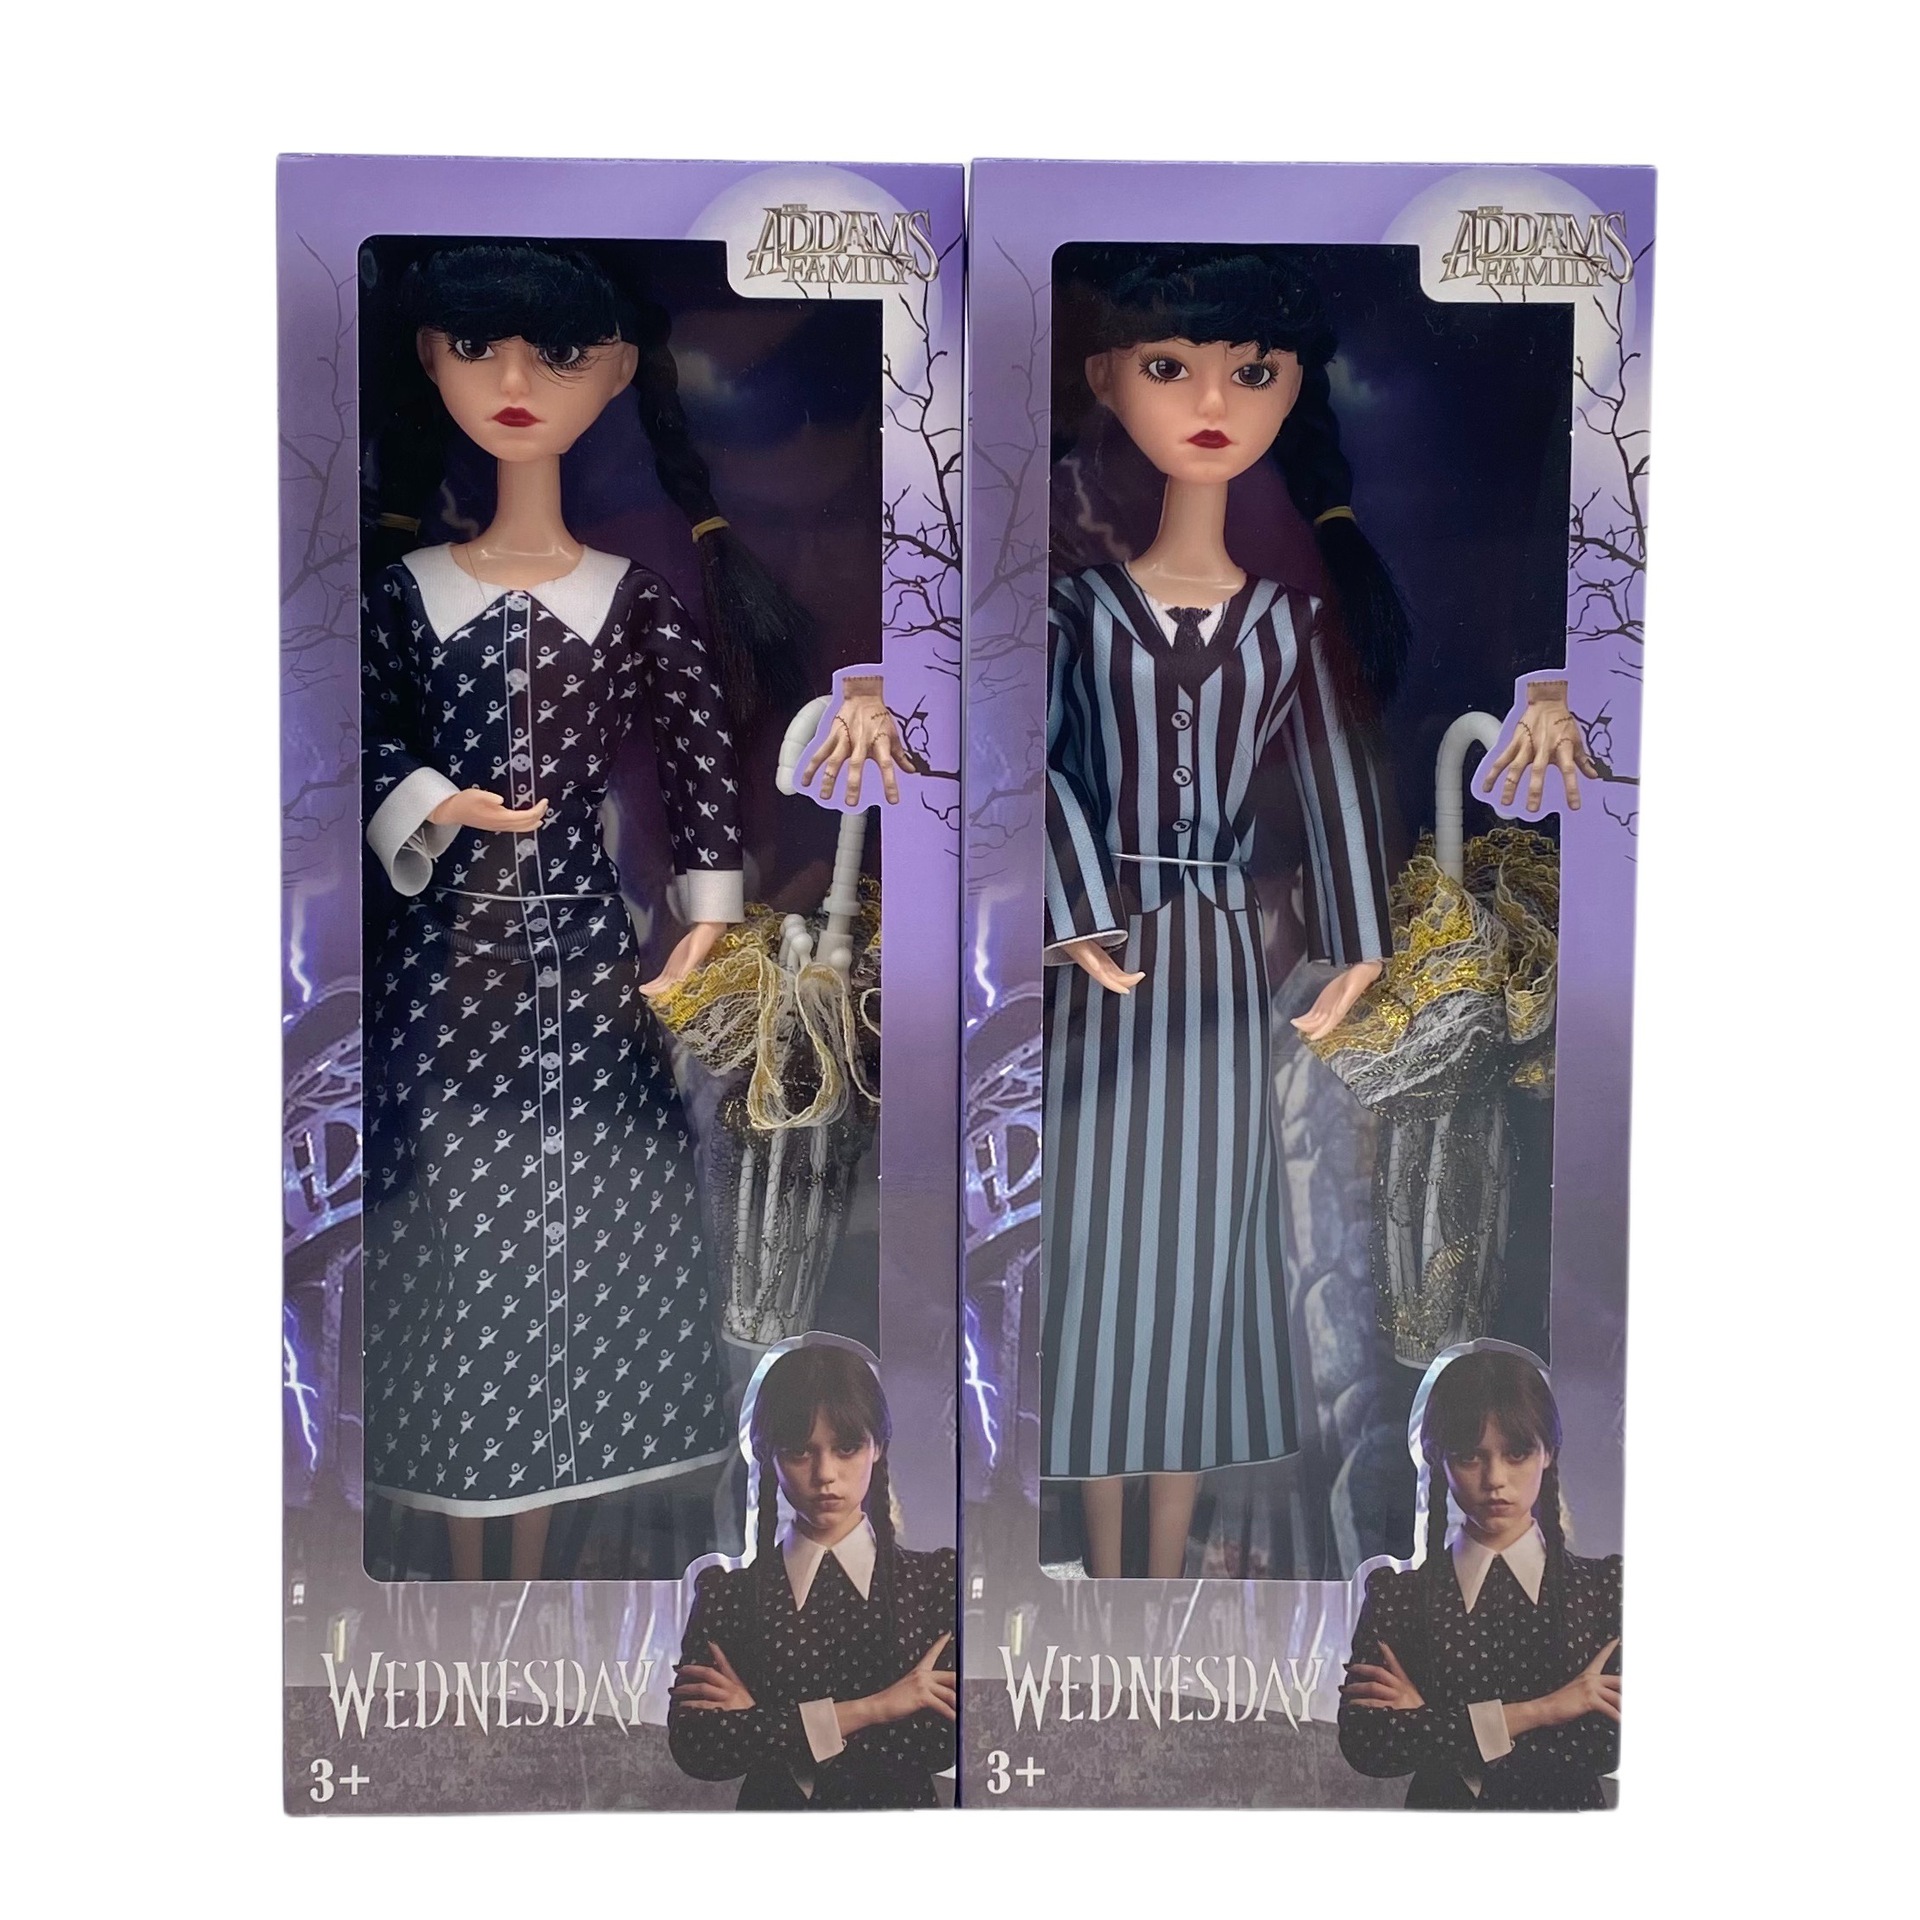 Bonecas Loofamy Wednesday Addams, boneca de plástico da família Addams, 11,5 polegadas, vestido listrado de manga curta, presentes de aniversário para crianças e meninas fãs